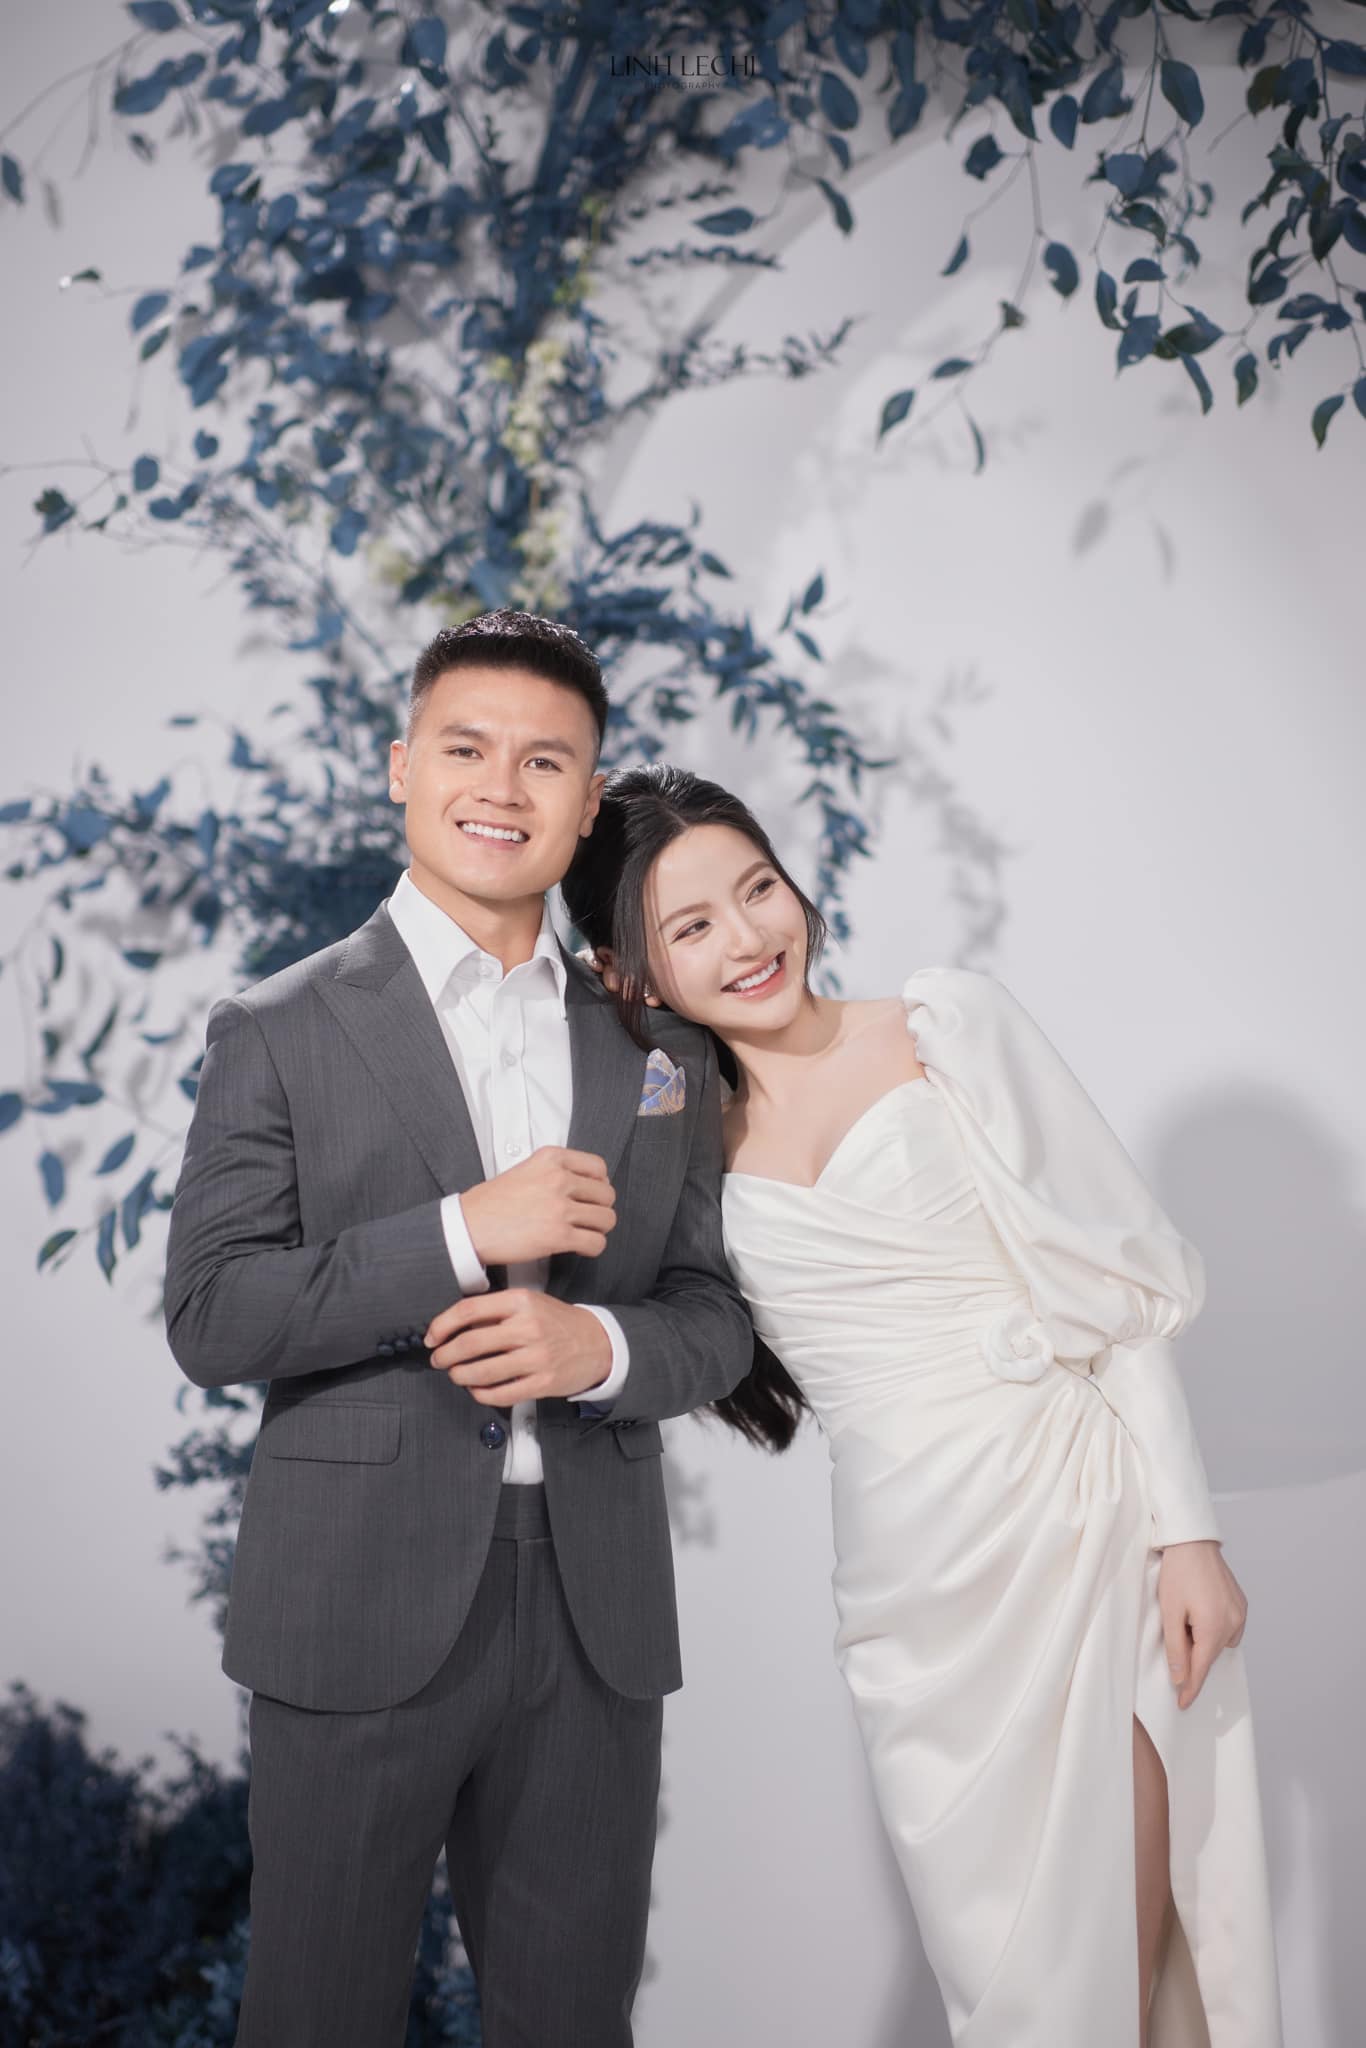 Một số hình ảnh cưới của Quang Hải và Chu Thanh Huyền do nhiếp ảnh gia có tiếng bấm máy hiện đã bị xóa trên tài khoản chính thức của người này